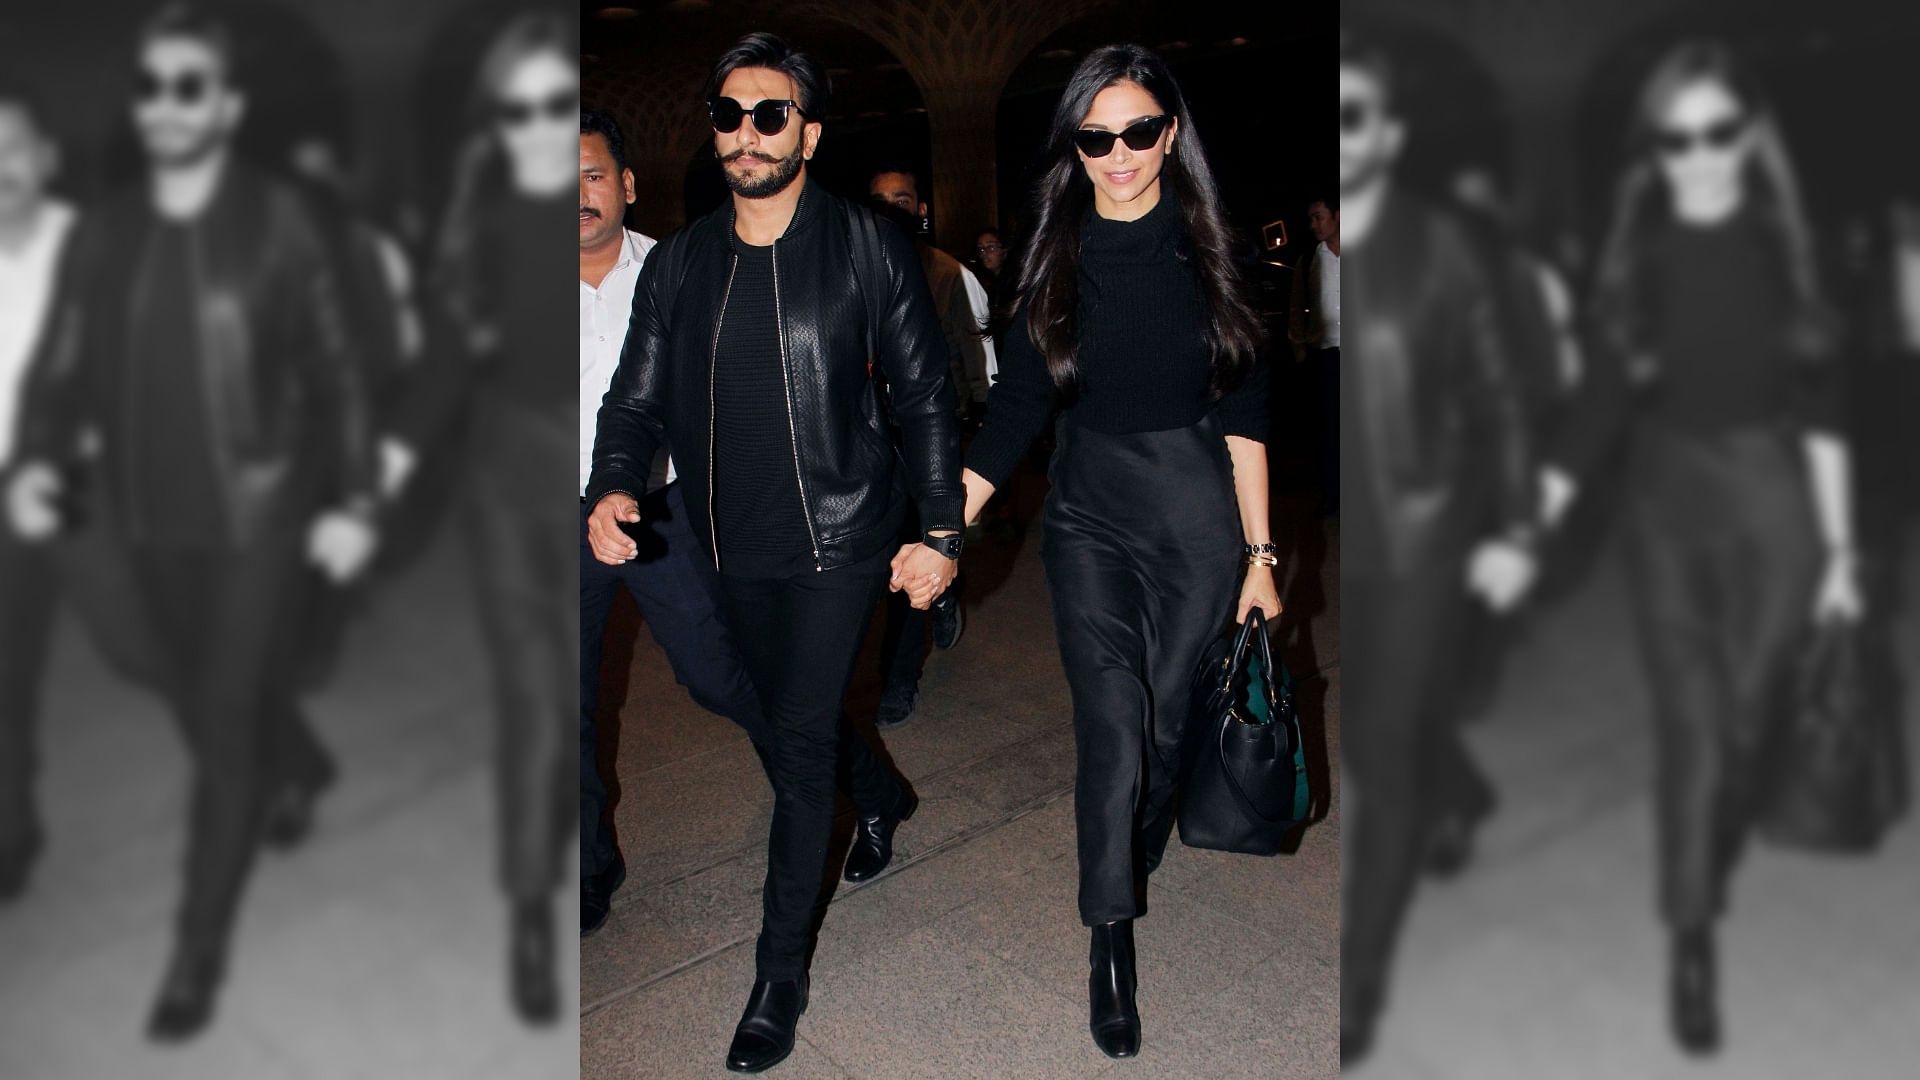 Deepika Padukone and Ranveer Singh at the airport.